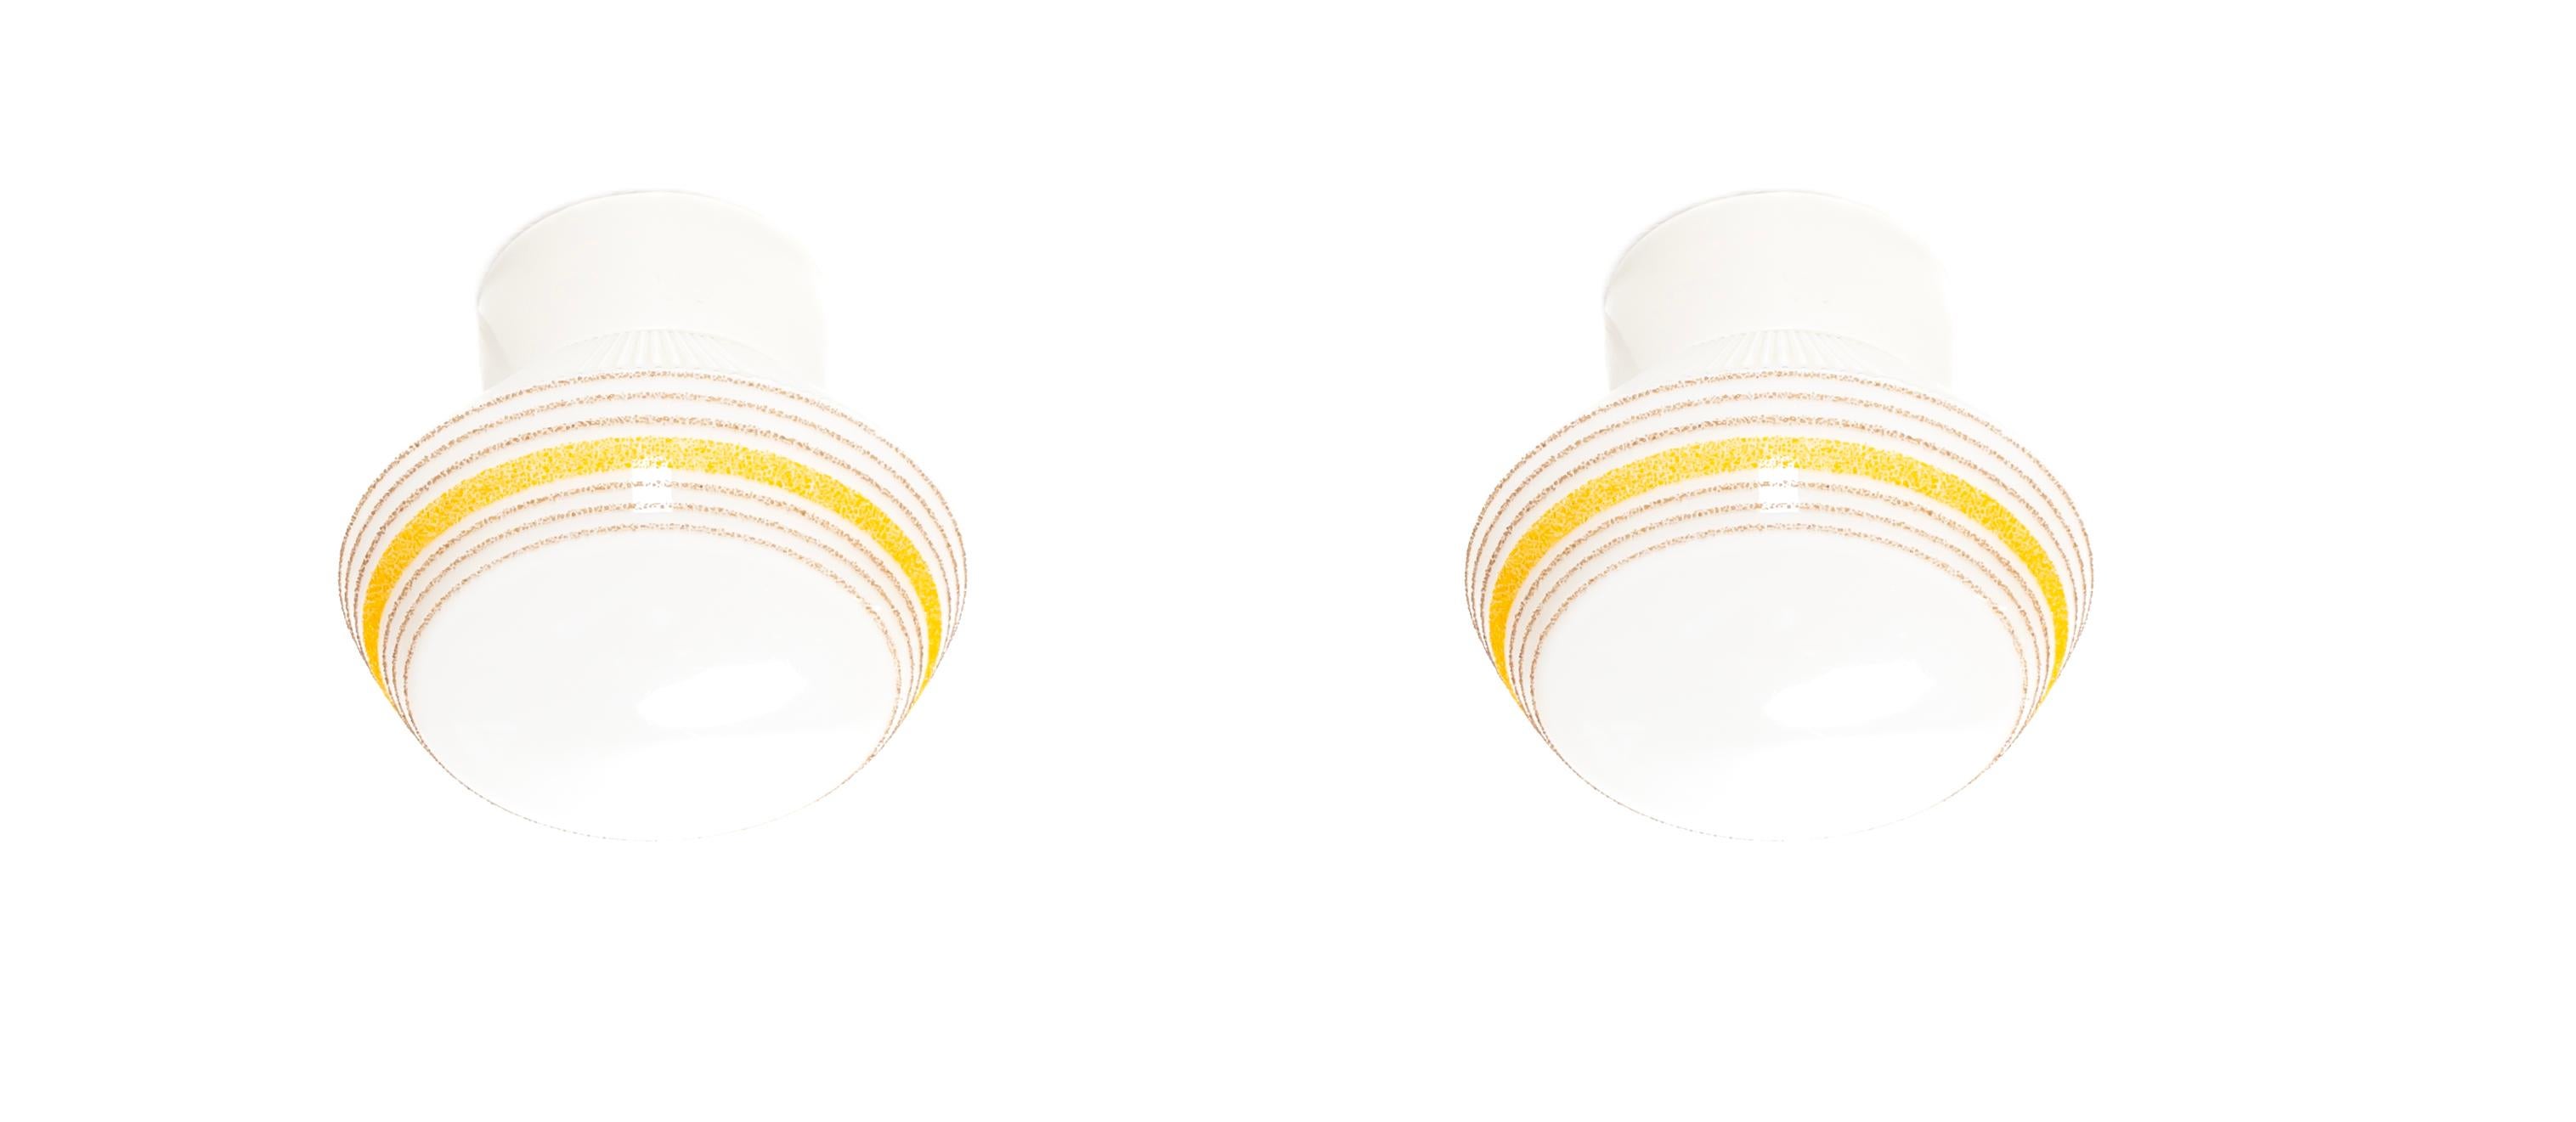 Wunderschönes Paar Deckenleuchten auf einem Porzellansockel mit Schirmen aus verziertem Opalglas. Entworfen und hergestellt in Norwegen in der ersten Hälfte der 1950er Jahre von Høvik Lys. Beide Lampen sind voll funktionsfähig und in gutem